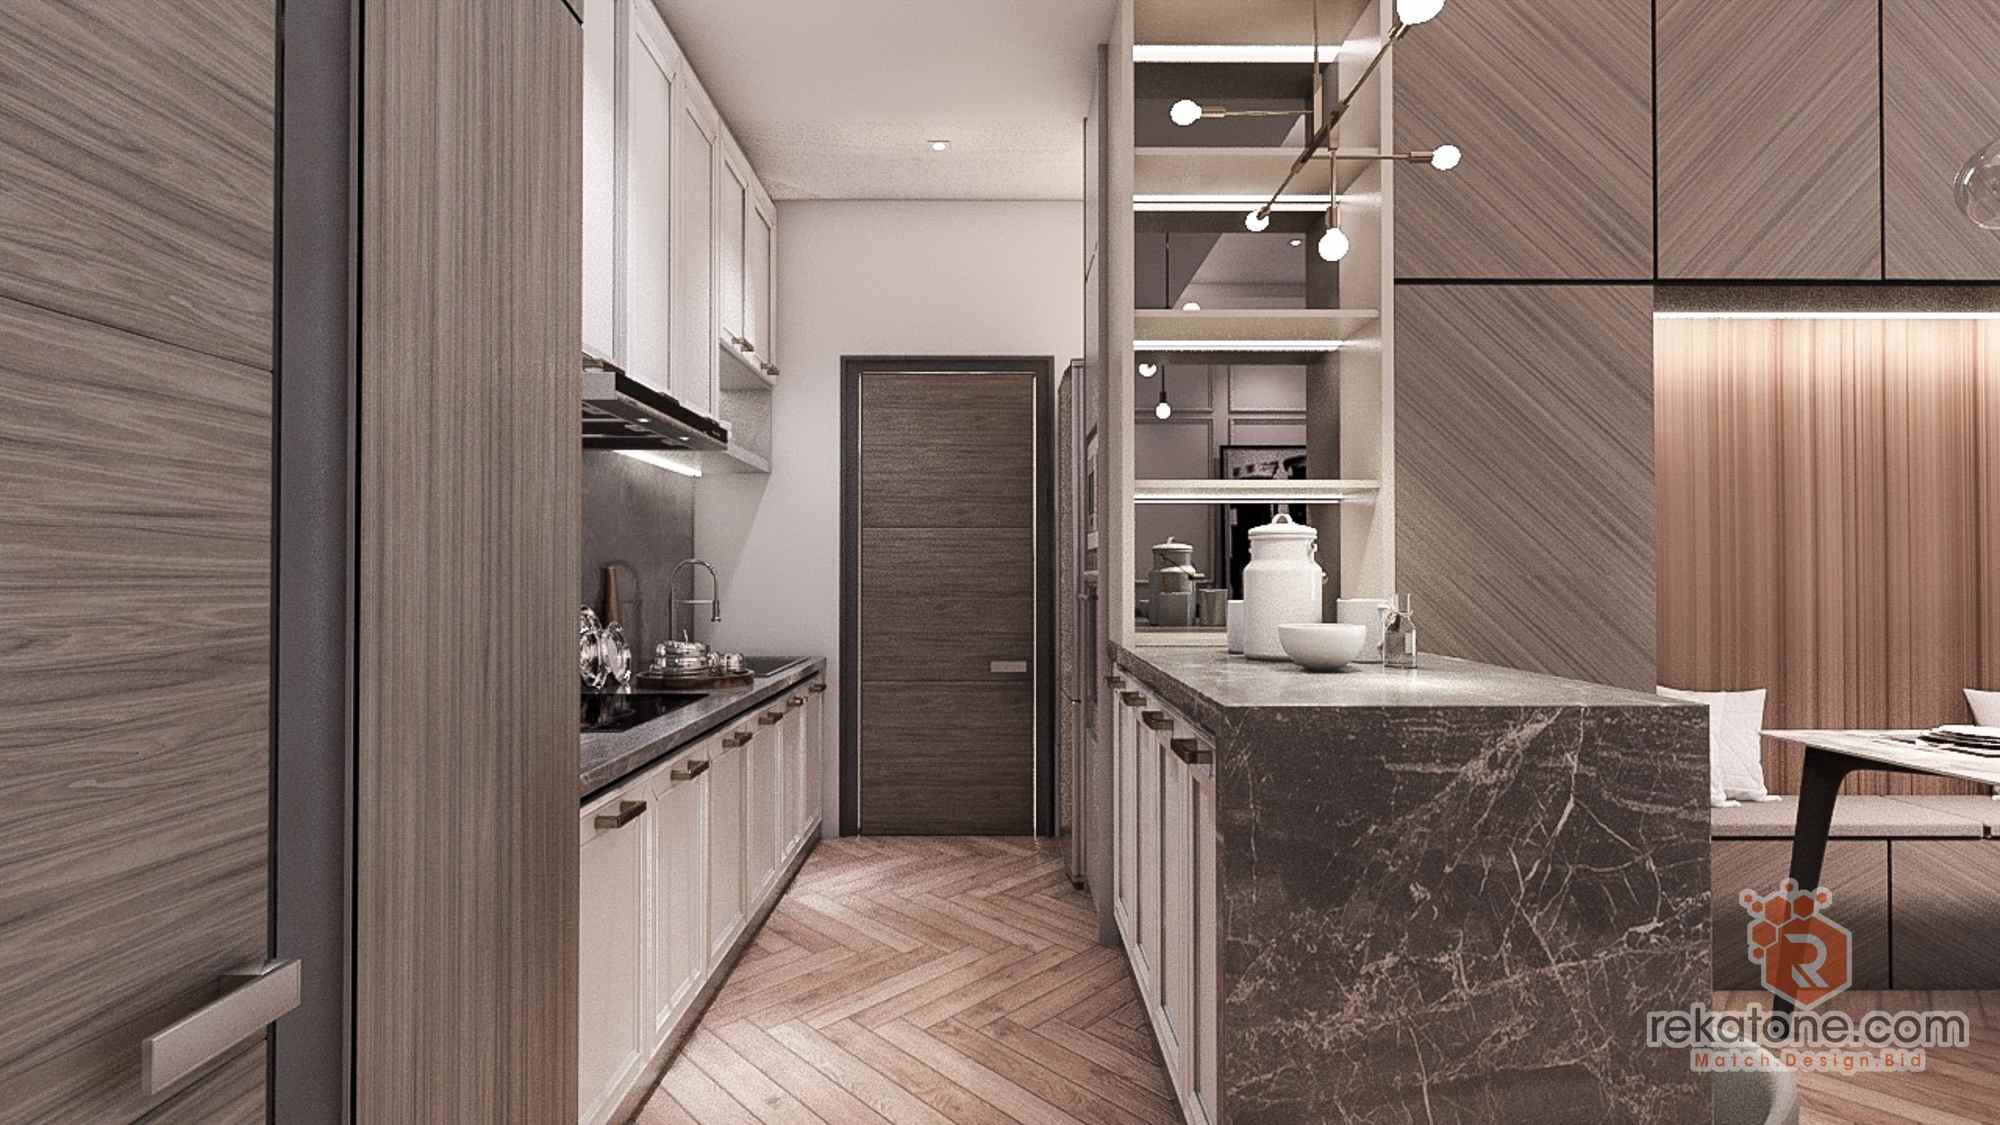 Small Kitchen Design For Condo /Apartment Malaysia 18   rekatone.com